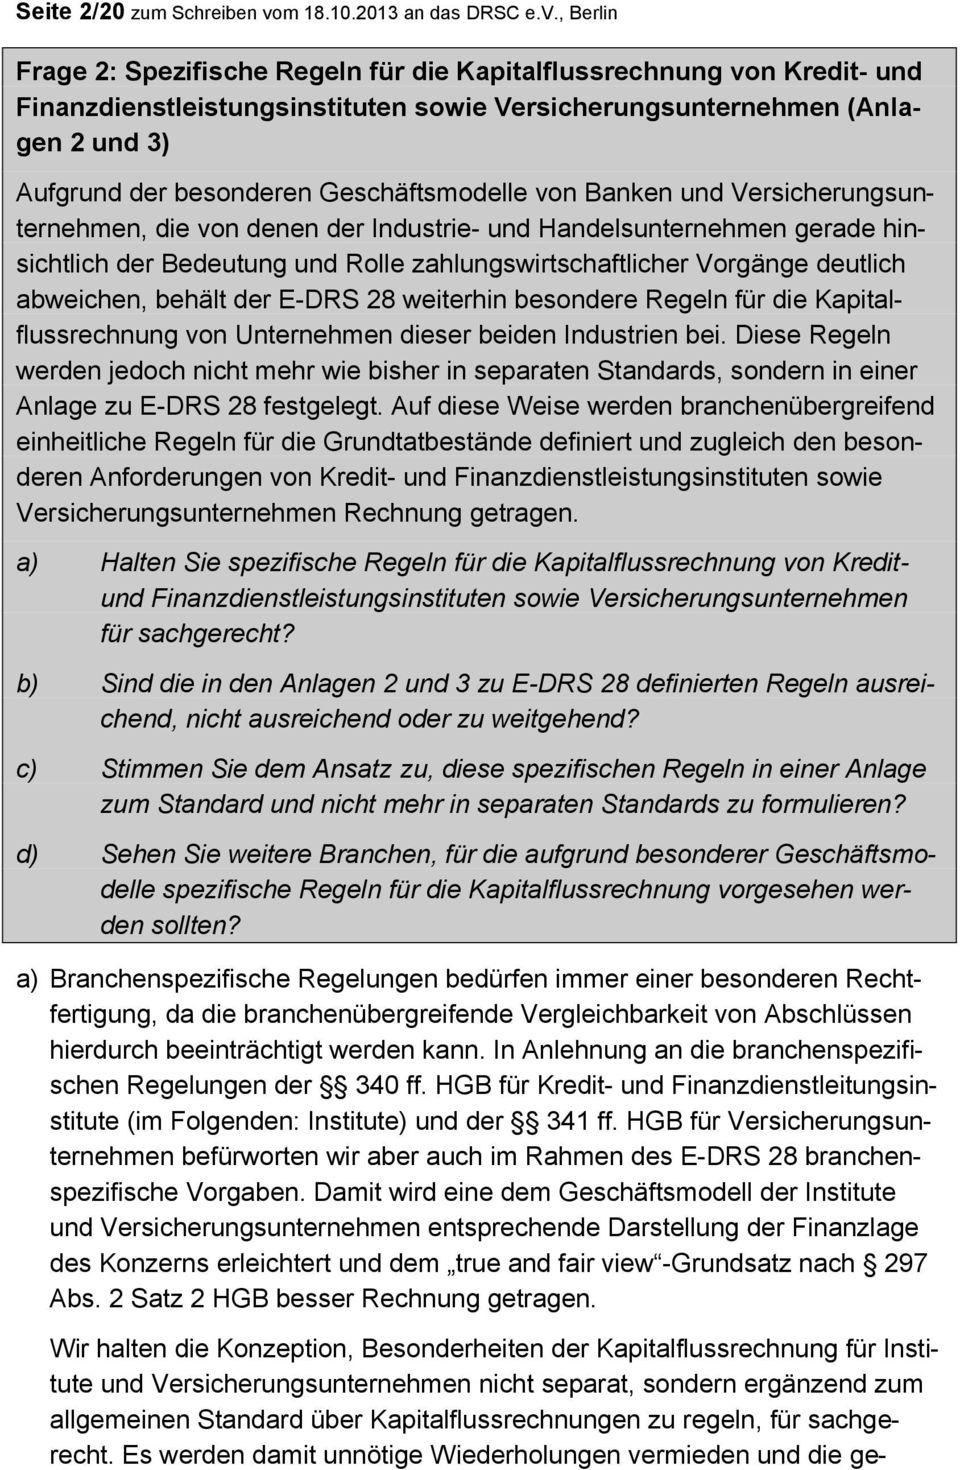 , Berlin Frage 2: Spezifische Regeln für die Kapitalflussrechnung von Kredit- und Finanzdienstleistungsinstituten sowie Versicherungsunternehmen (Anlagen 2 und 3) Aufgrund der besonderen